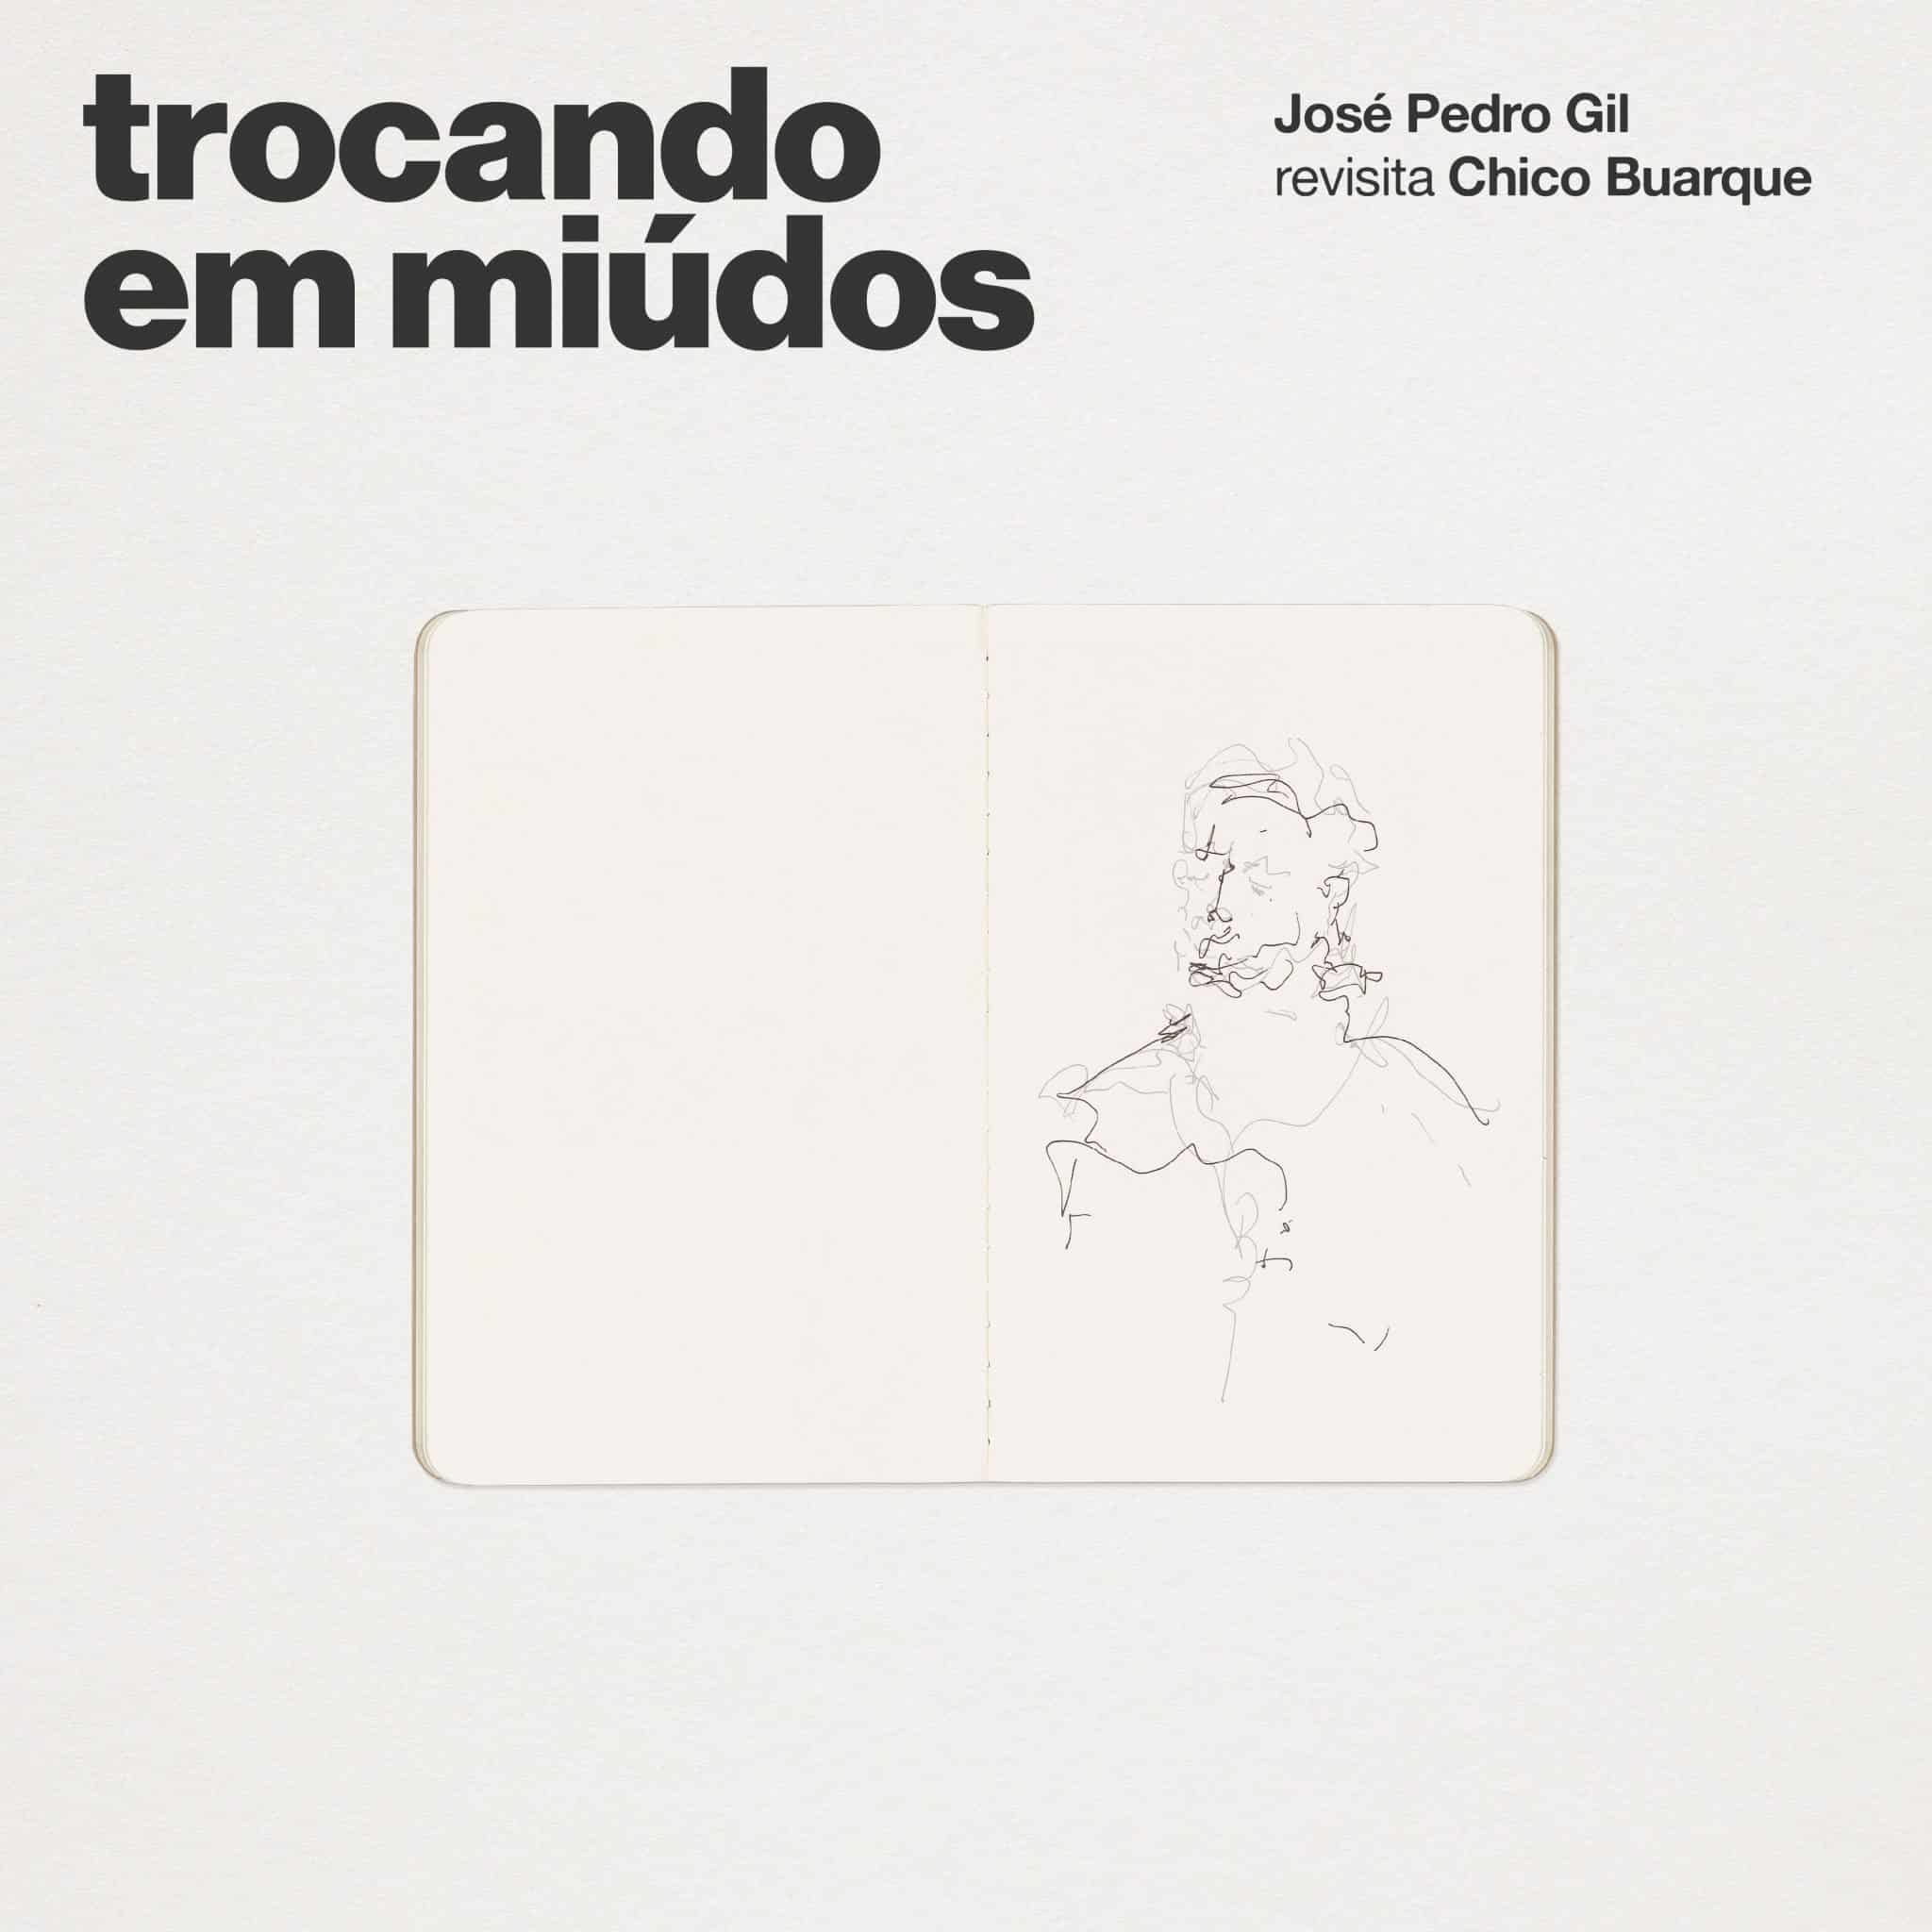 revistaprosaversoearte.com - 'Trocando em miúdos - José Pedro Gil revisita Chico Buarque', álbum do cantor português